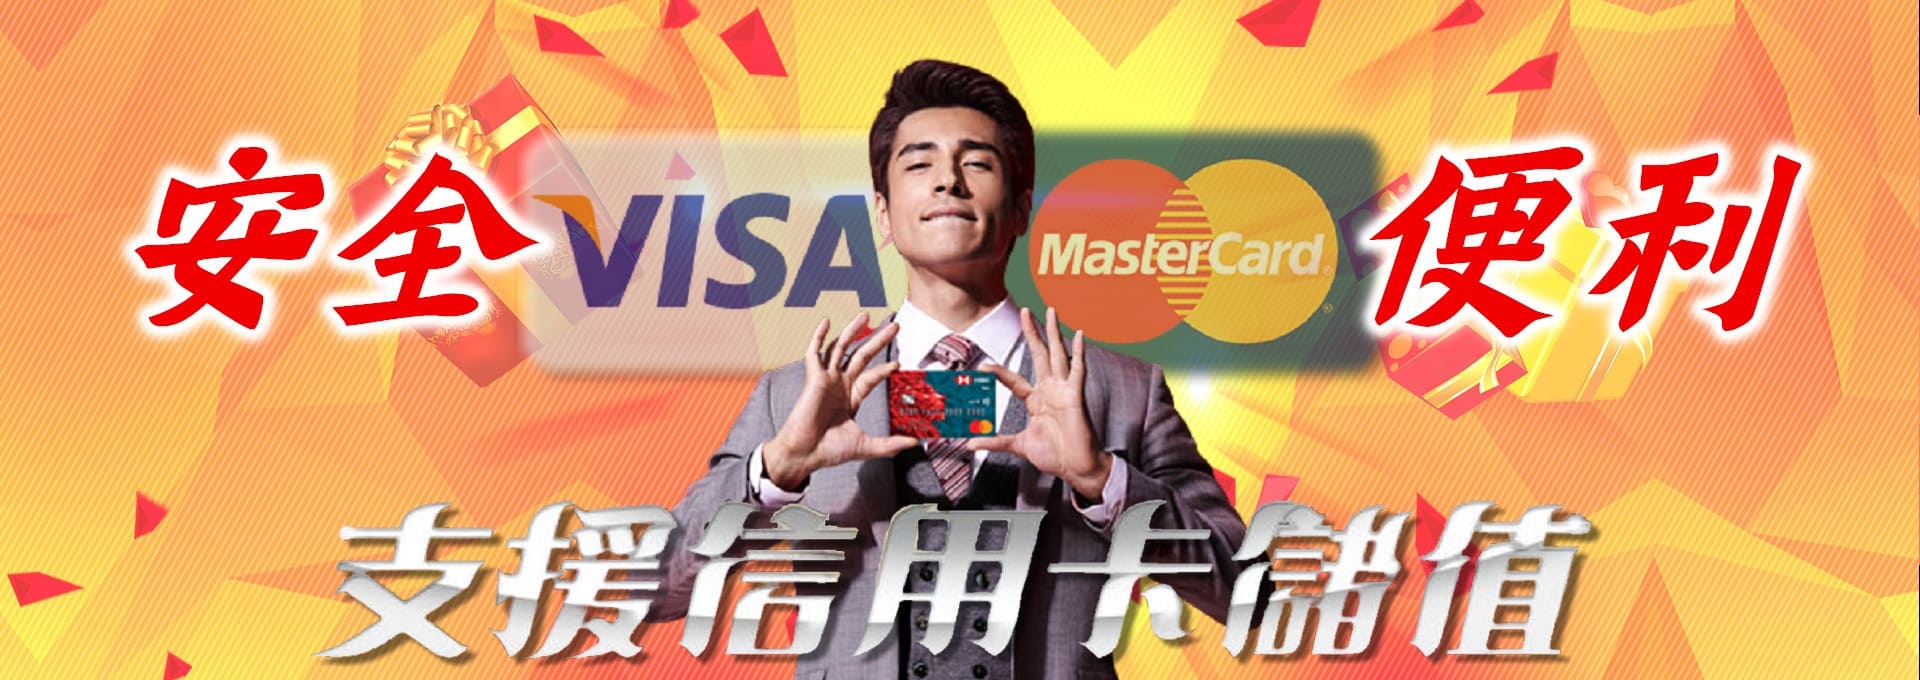 金禾娛樂- 安全便利支援信用卡儲值